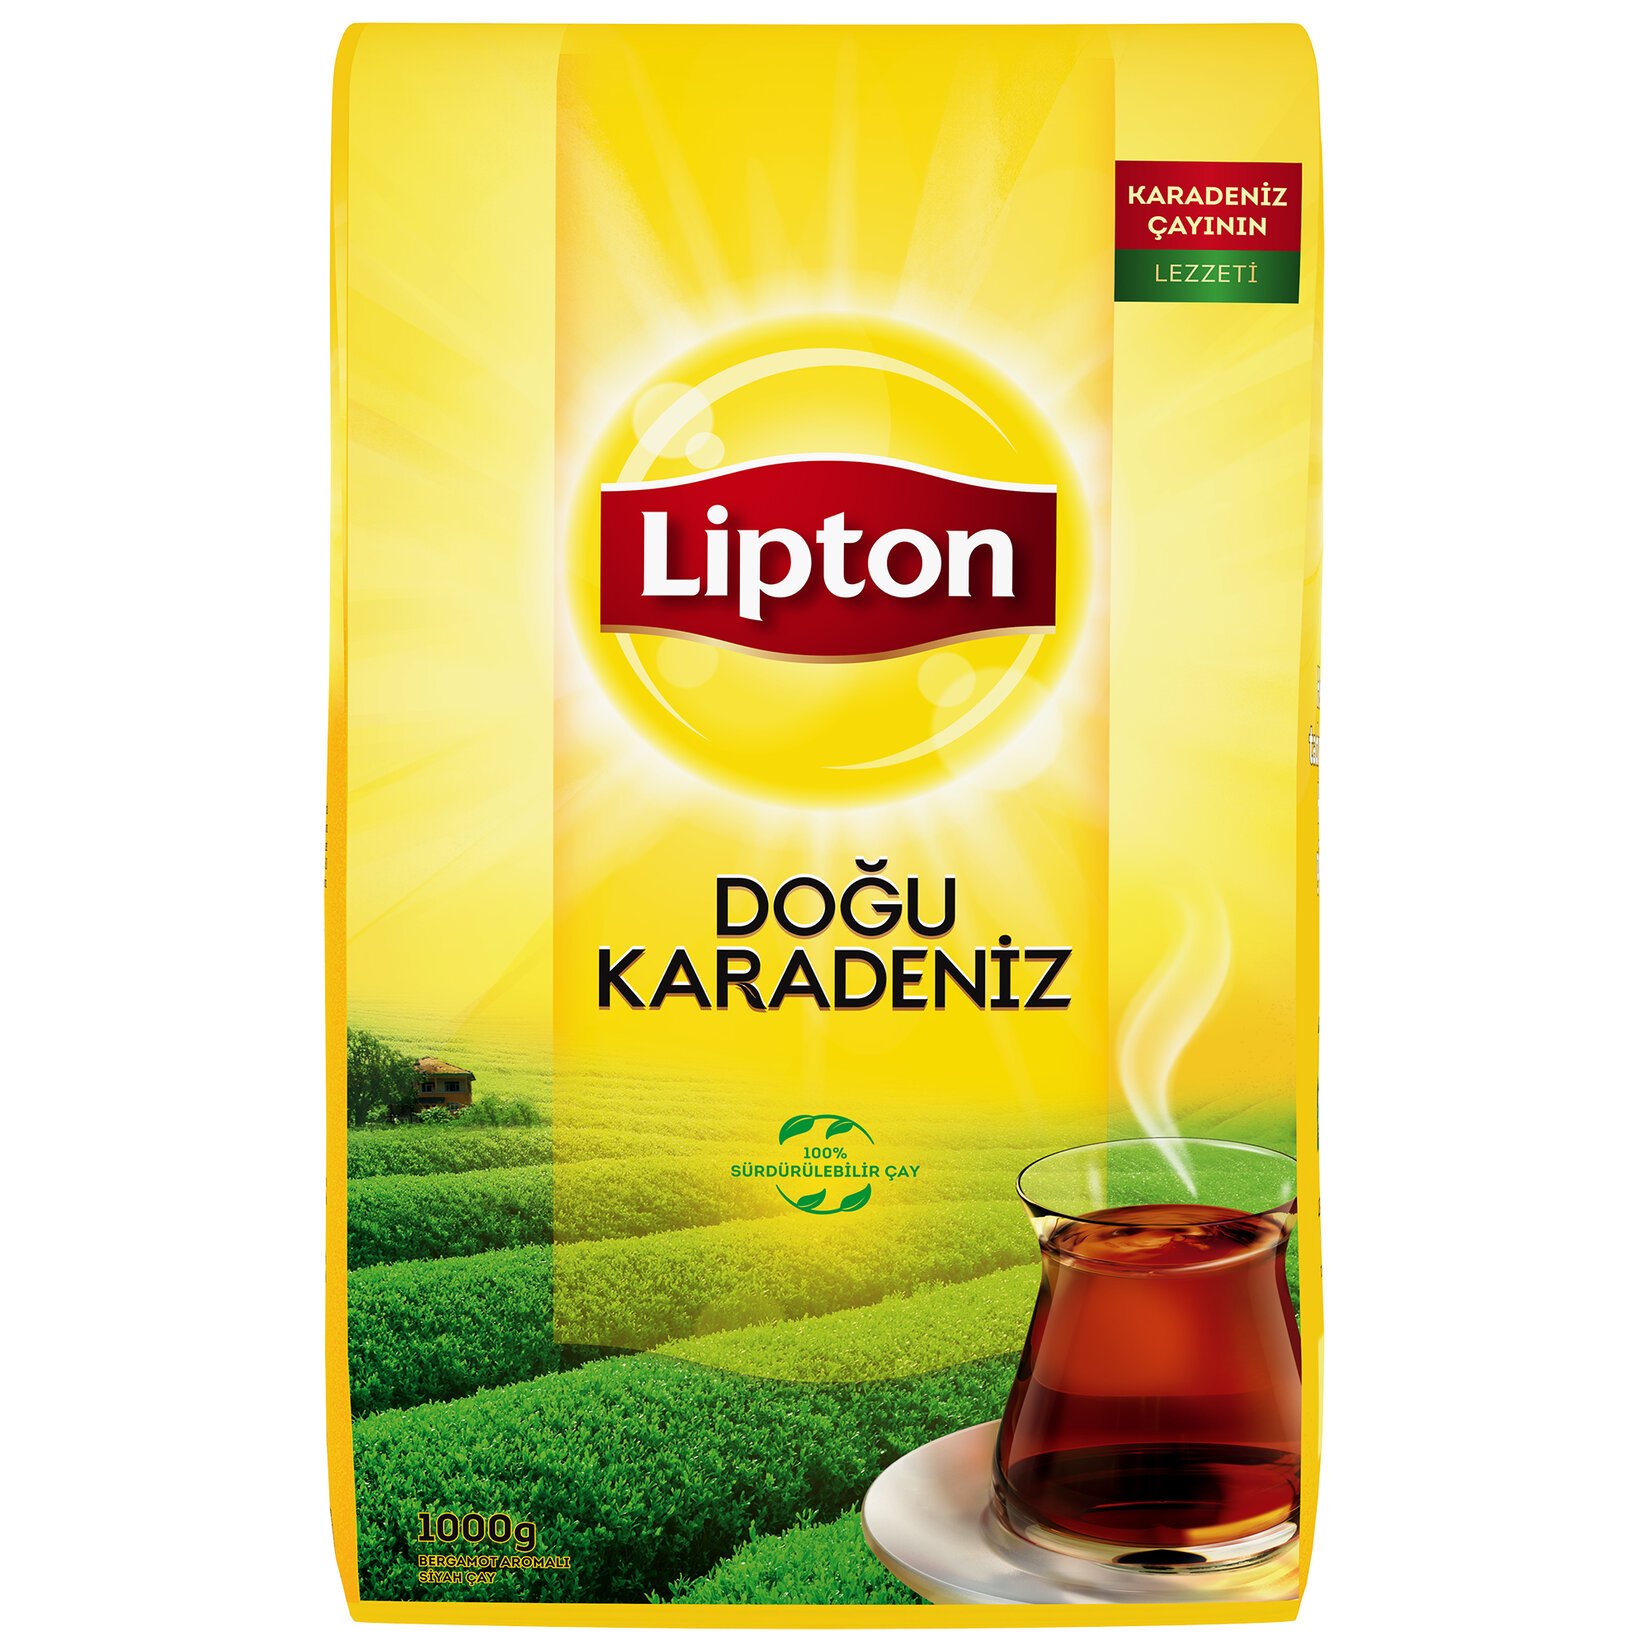 Lipton Doğu Karadeniz Dökme Çay 1000gr